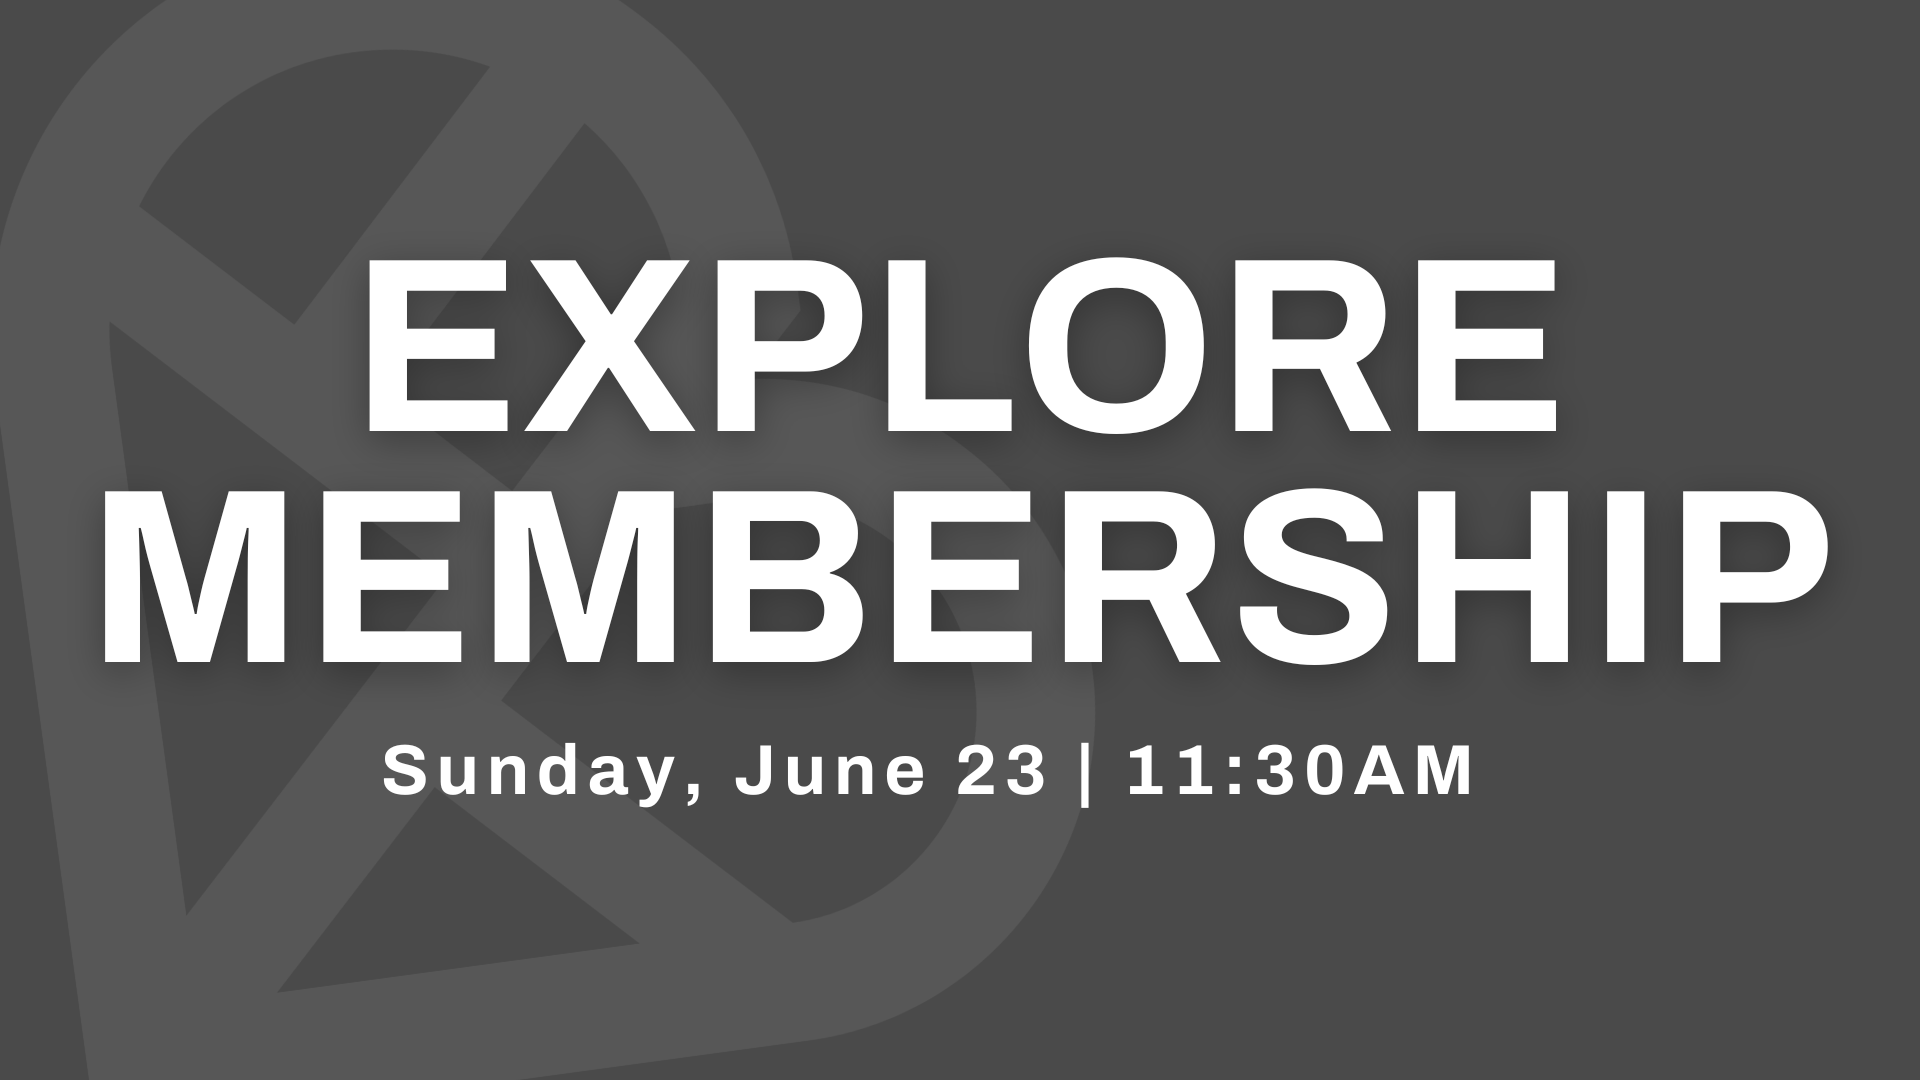 Explore Membership